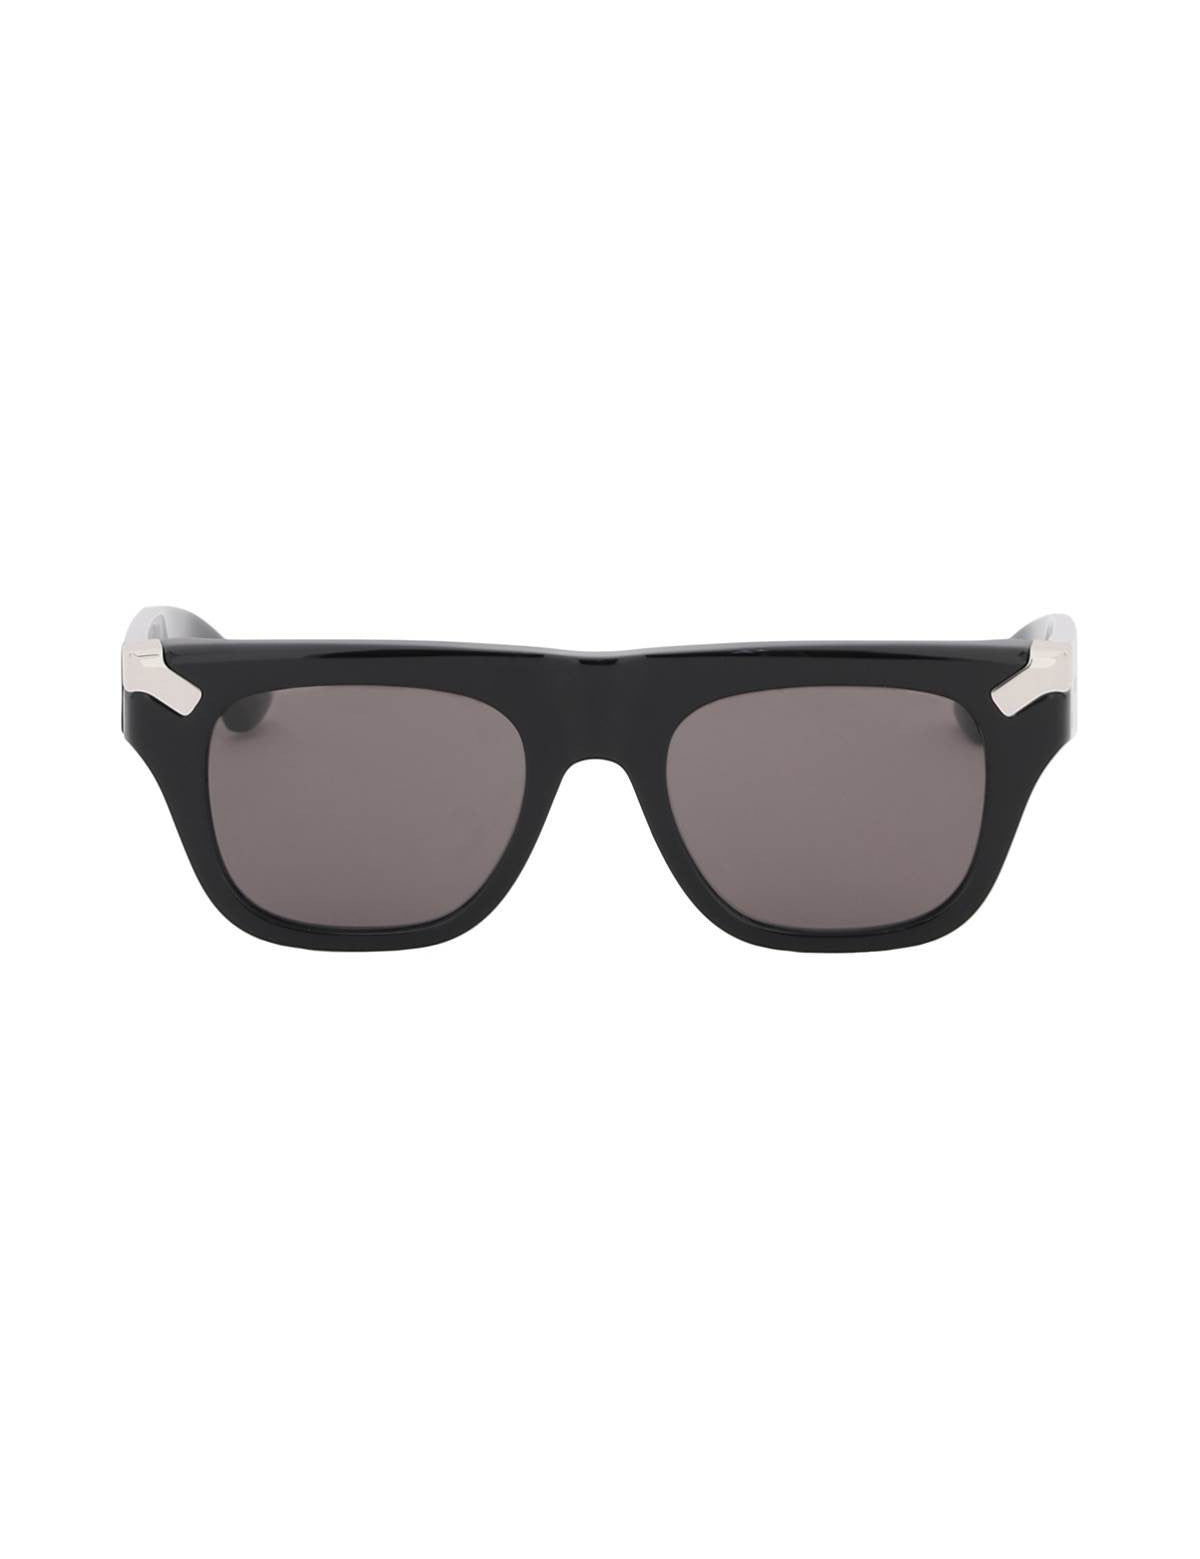 alexander-mcqueen-punk-rivet-mask-sunglasses.jpg